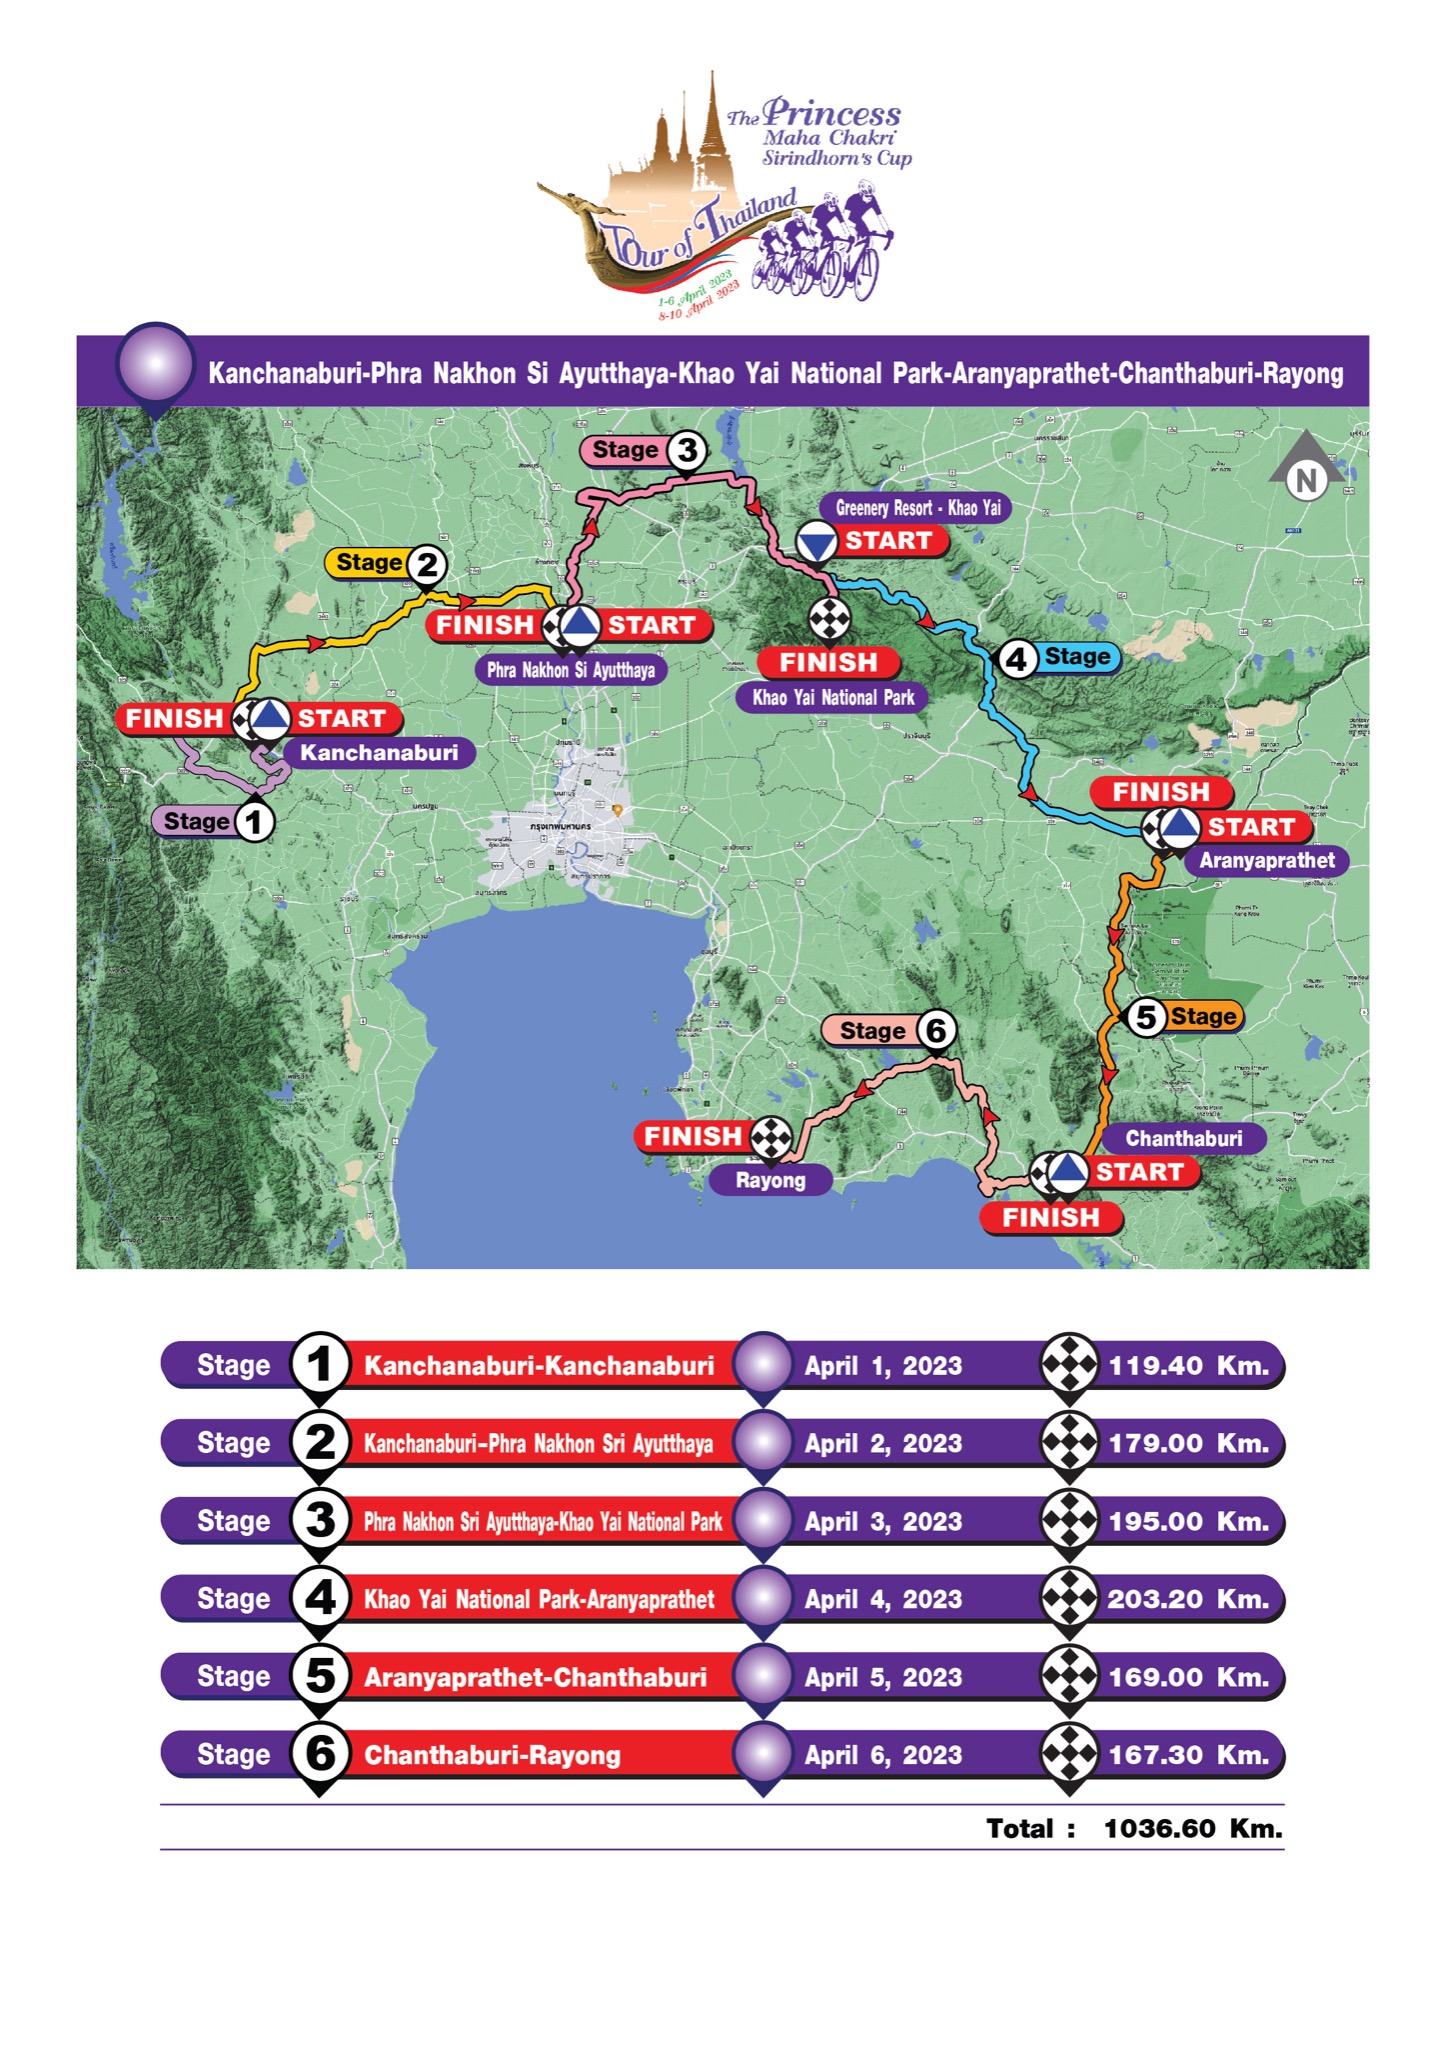 Profile_Tour_of_Thailand_2023